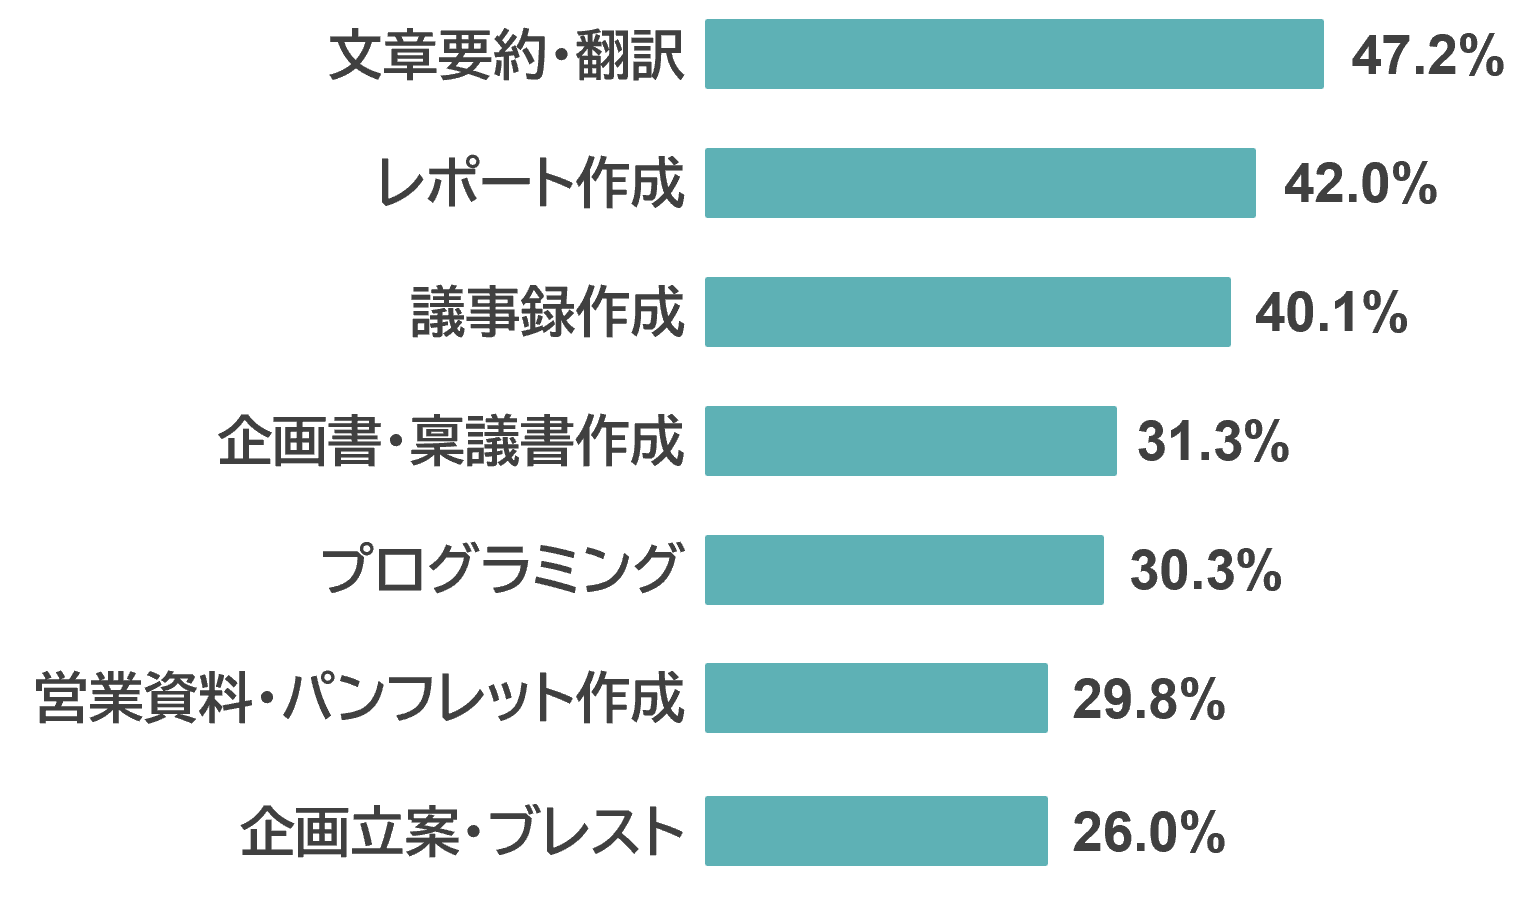 図表：対話AIの日常業務での利用意向 文章要約・翻訳47.2%、レポート作成42.0%、議事録作成40.1%、企画書・稟議書作成31.3%、プログラミング30.3%、営業資料・パンフレット作成29.8%、企画立案・ブレスト26.0%